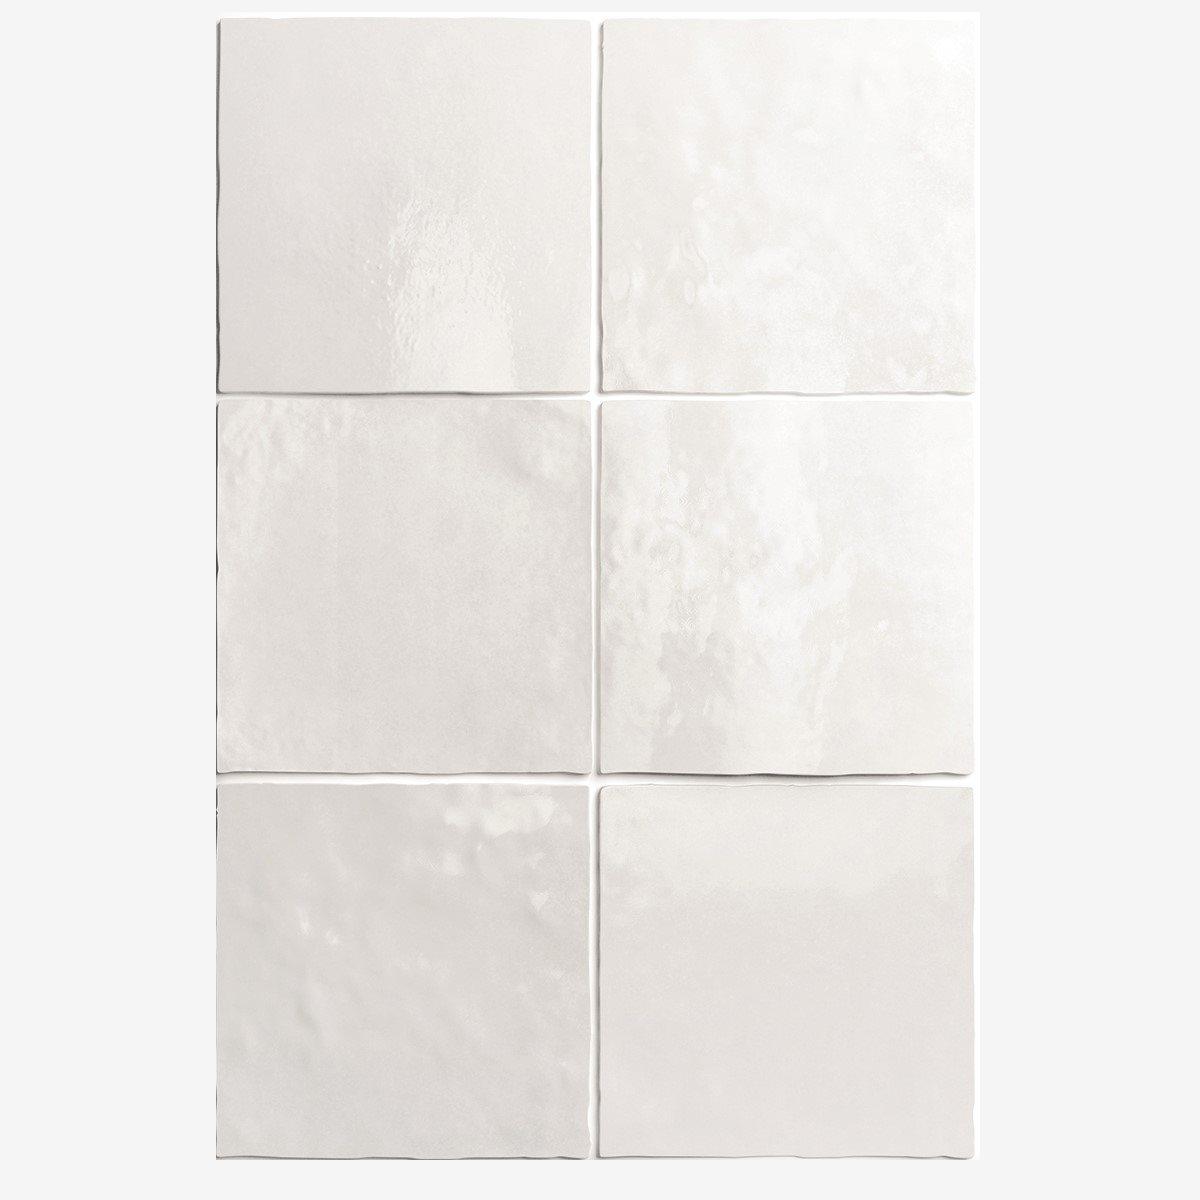 Zellige blanc nuancé de texture lisse sans motifs taille 15x15 cm